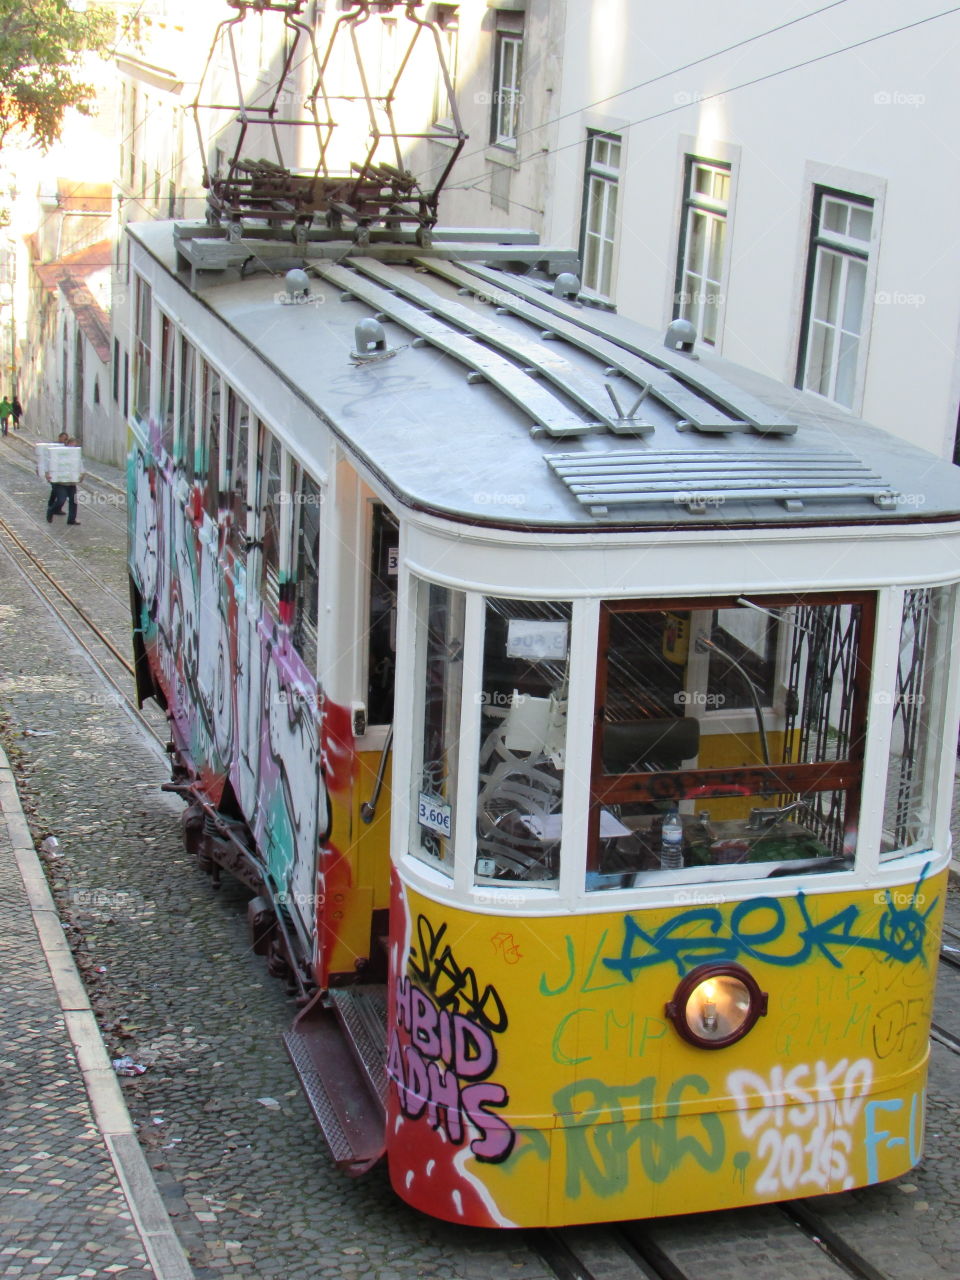 Graffiti tram on a street